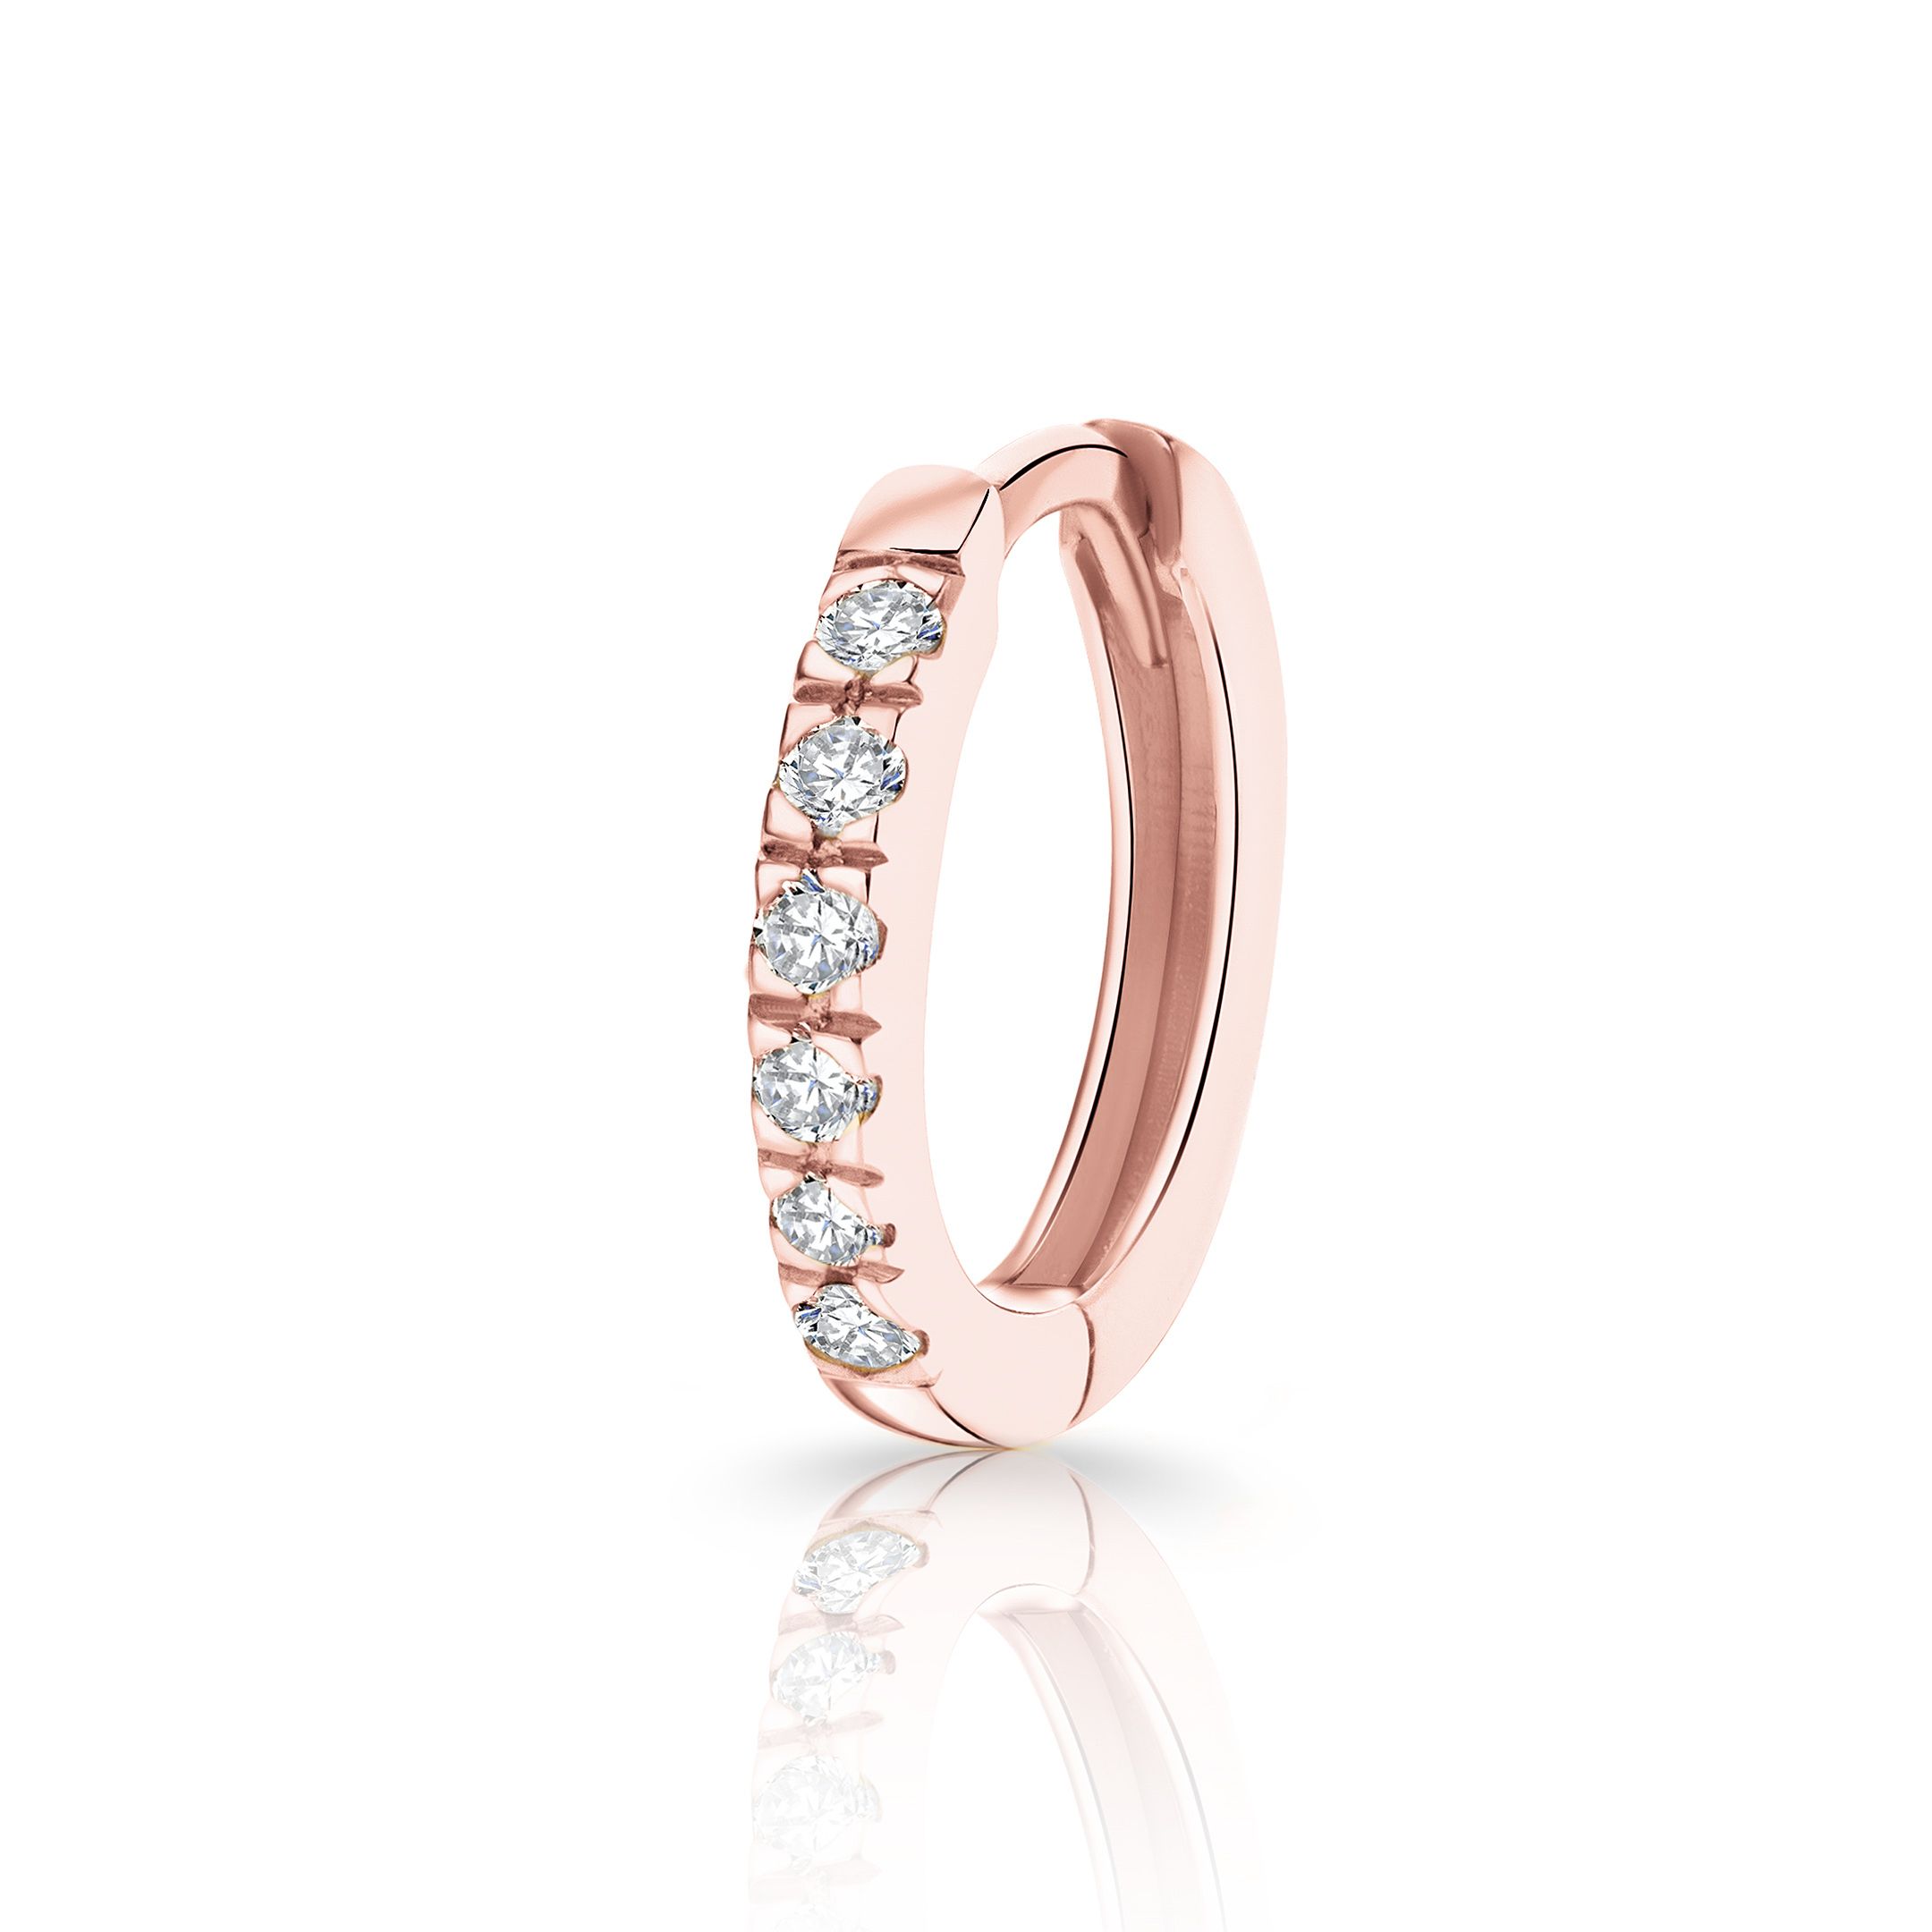 Pendiente Piercing Petite Diamonds Aro MINI en Oro Rosa de 18 Kt